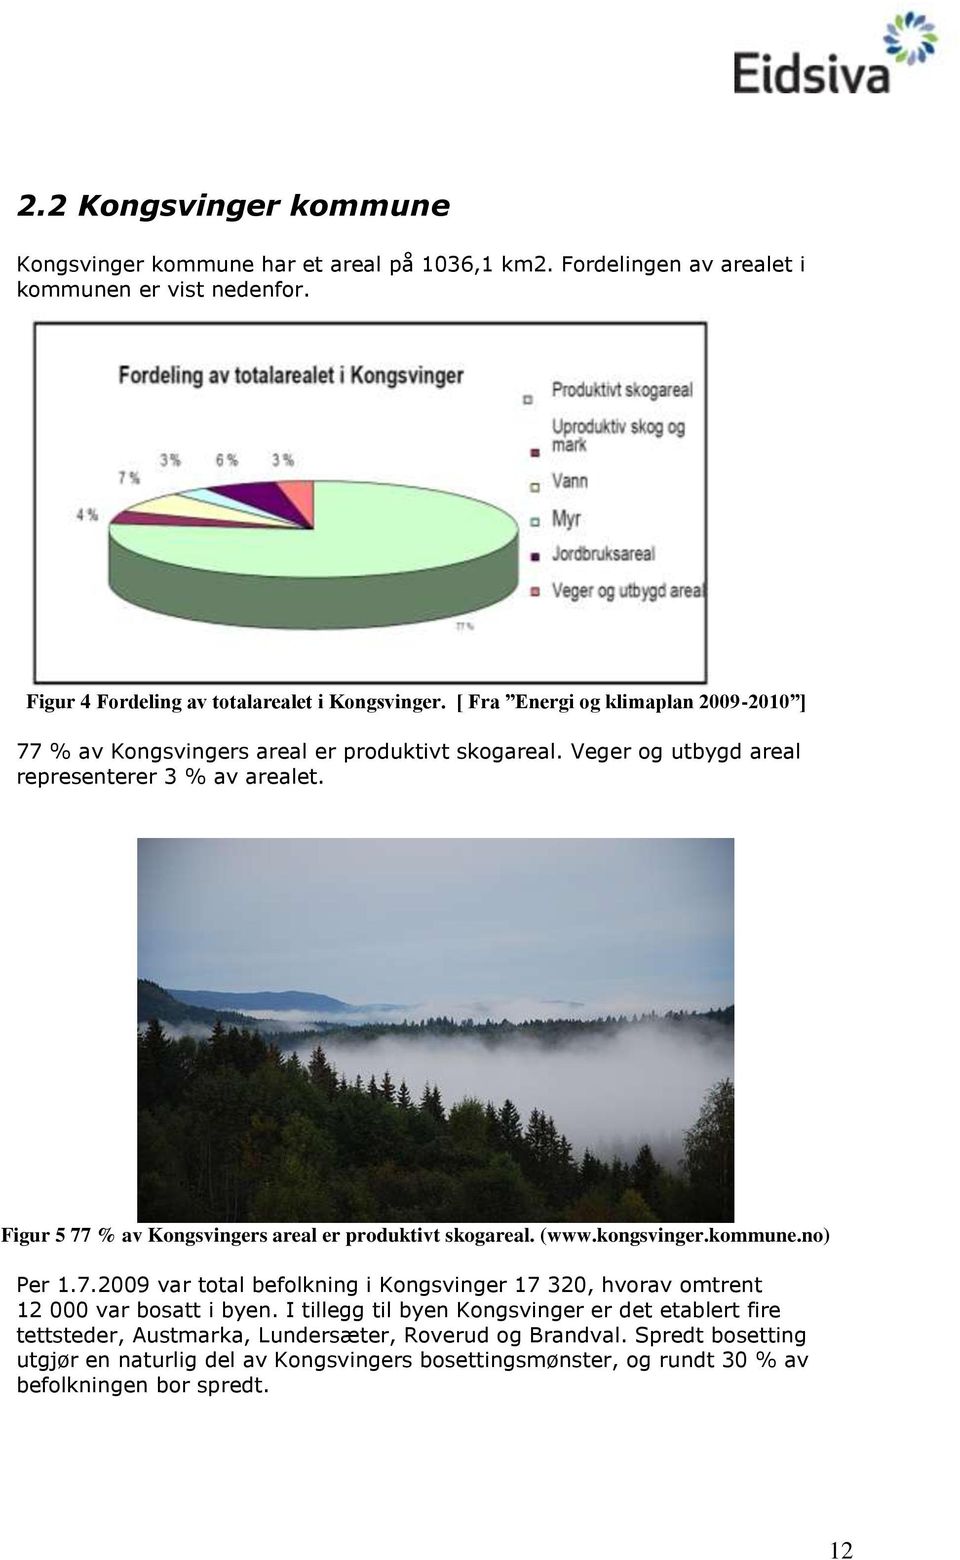 Figur 5 77 % av Kongsvingers areal er produktivt skogareal. (www.kongsvinger.kommune.no) Per 1.7.2009 var total befolkning i Kongsvinger 17 320, hvorav omtrent 12 000 var bosatt i byen.